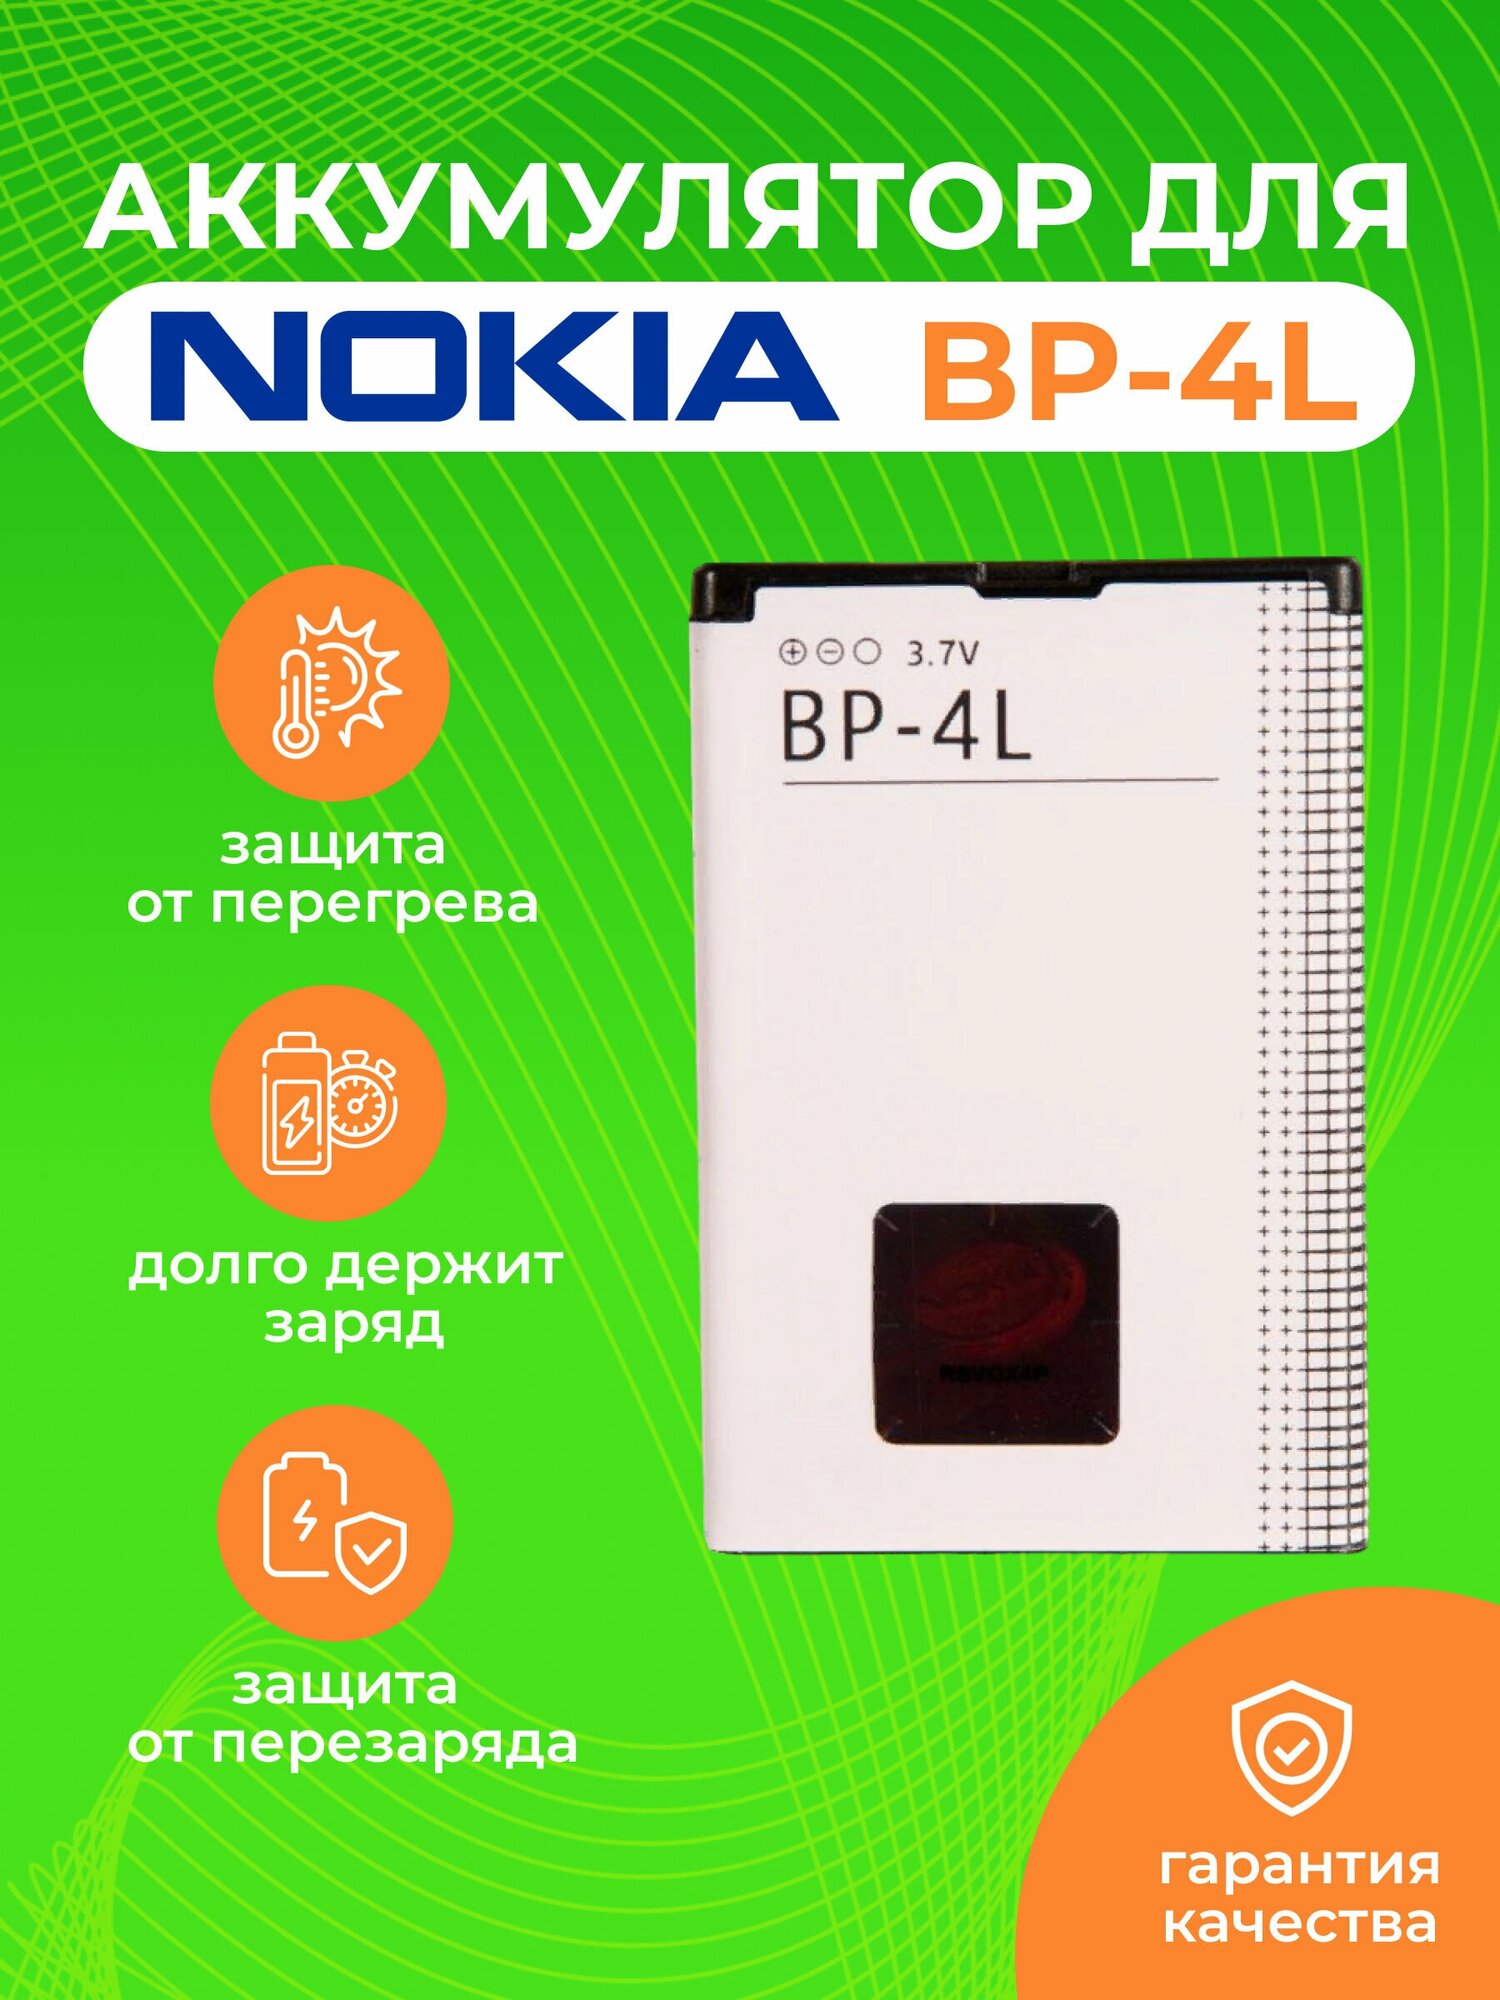 Аккумулятор ZeepDeep для Nokia 6760 Slide, N97, E90i, E95, E52, E55, E61, E63, E71, E72, E90, N810 BP-4L